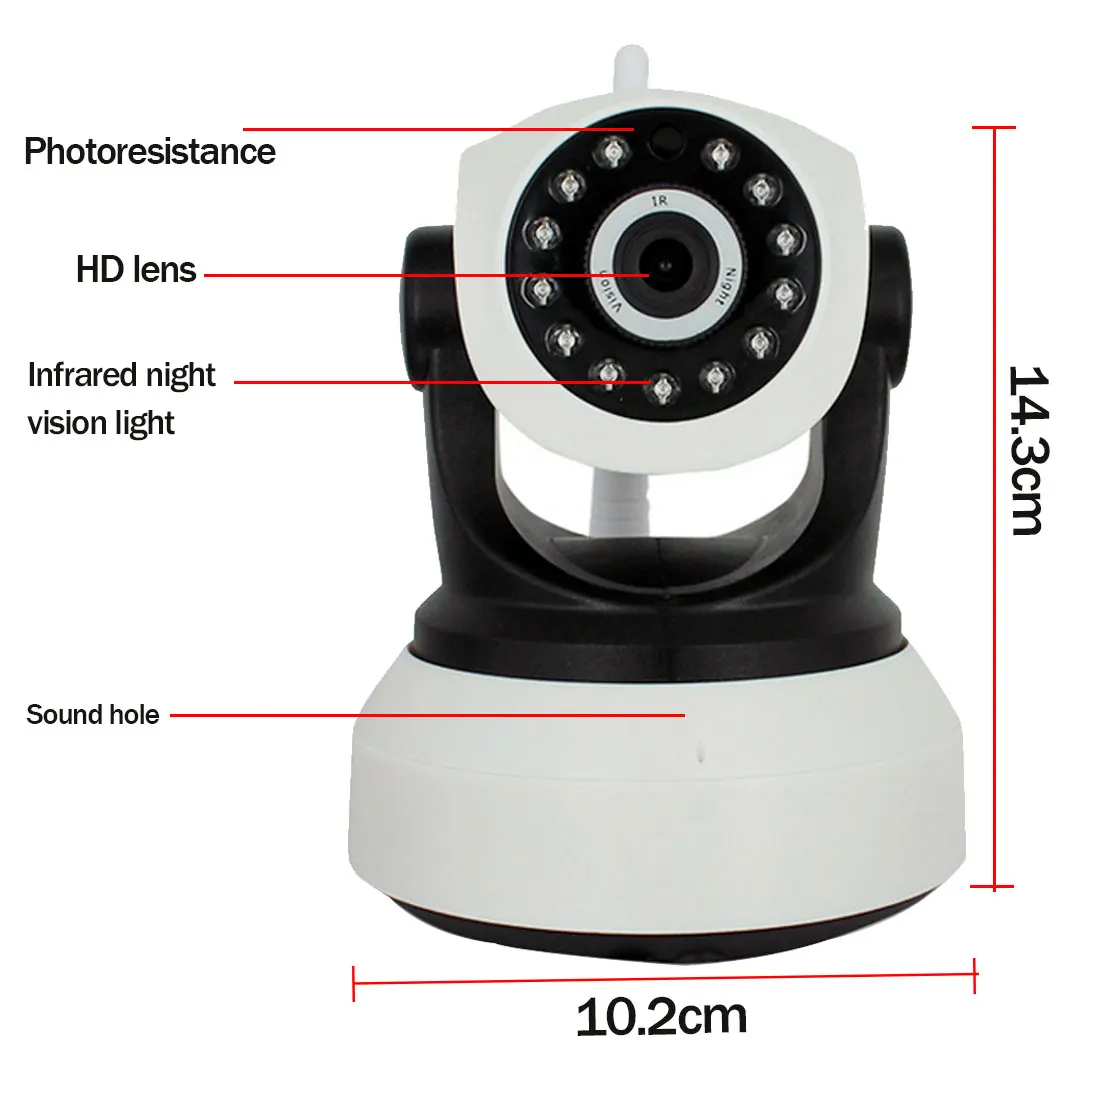 Wifi npelanyu 720P IP камера C7824WIP wifi камера видеонаблюдения CCTV камера безопасности IR ночное видение PTZ камера Мобильный вид